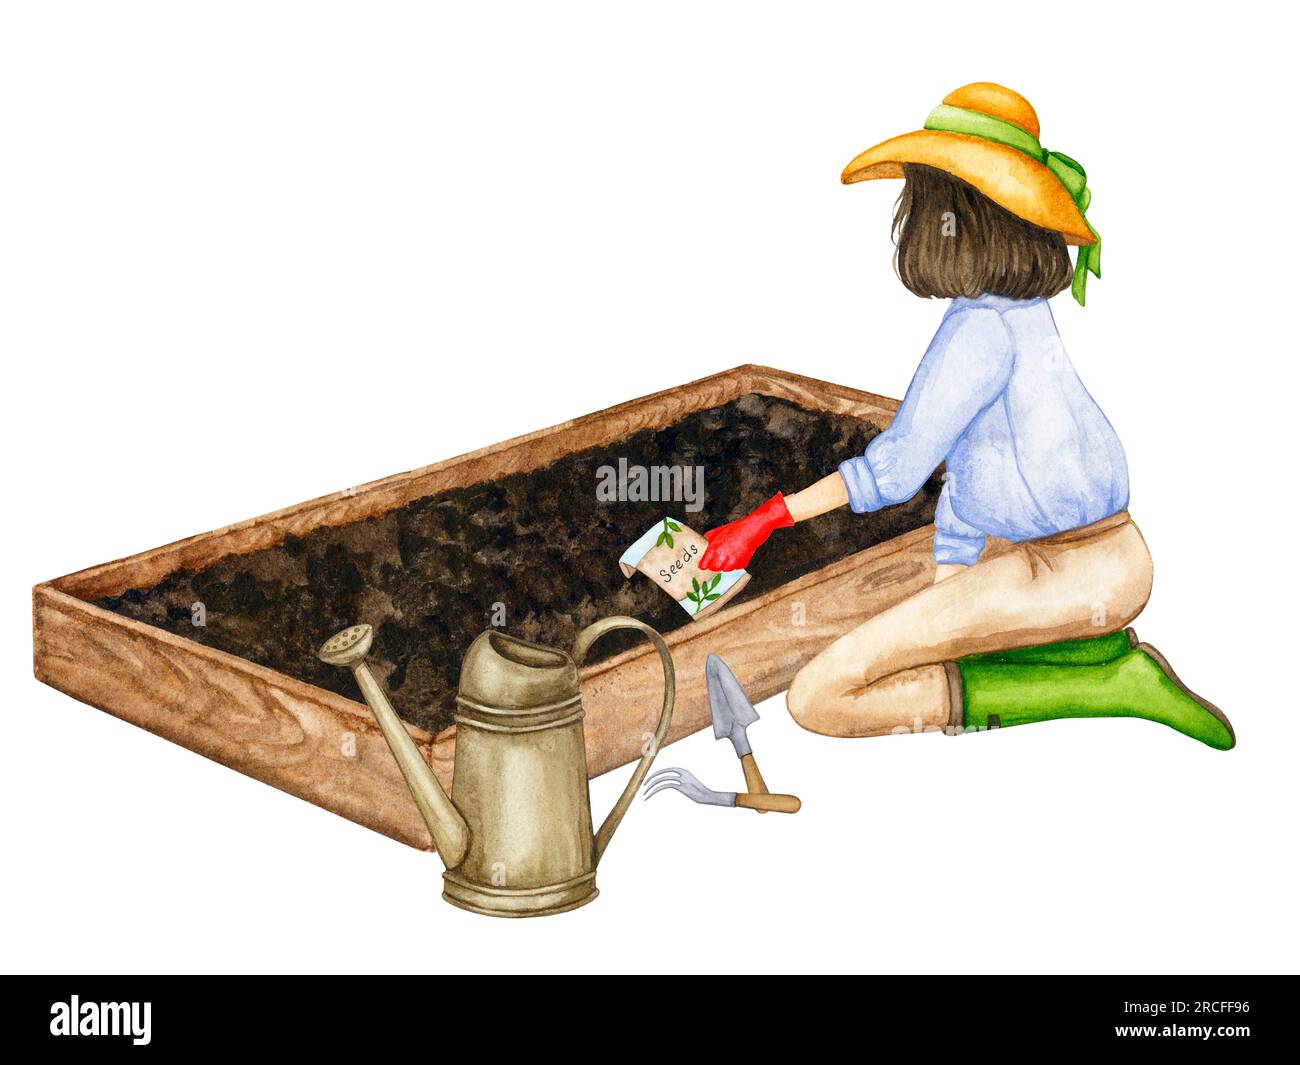 Una donna semina semi di verdure nei suoi letti da giardino. Lavori in giardino. Composizione sul tema del giardinaggio, delle piantine primaverili, della coltivazione delle verdure. Foto Stock